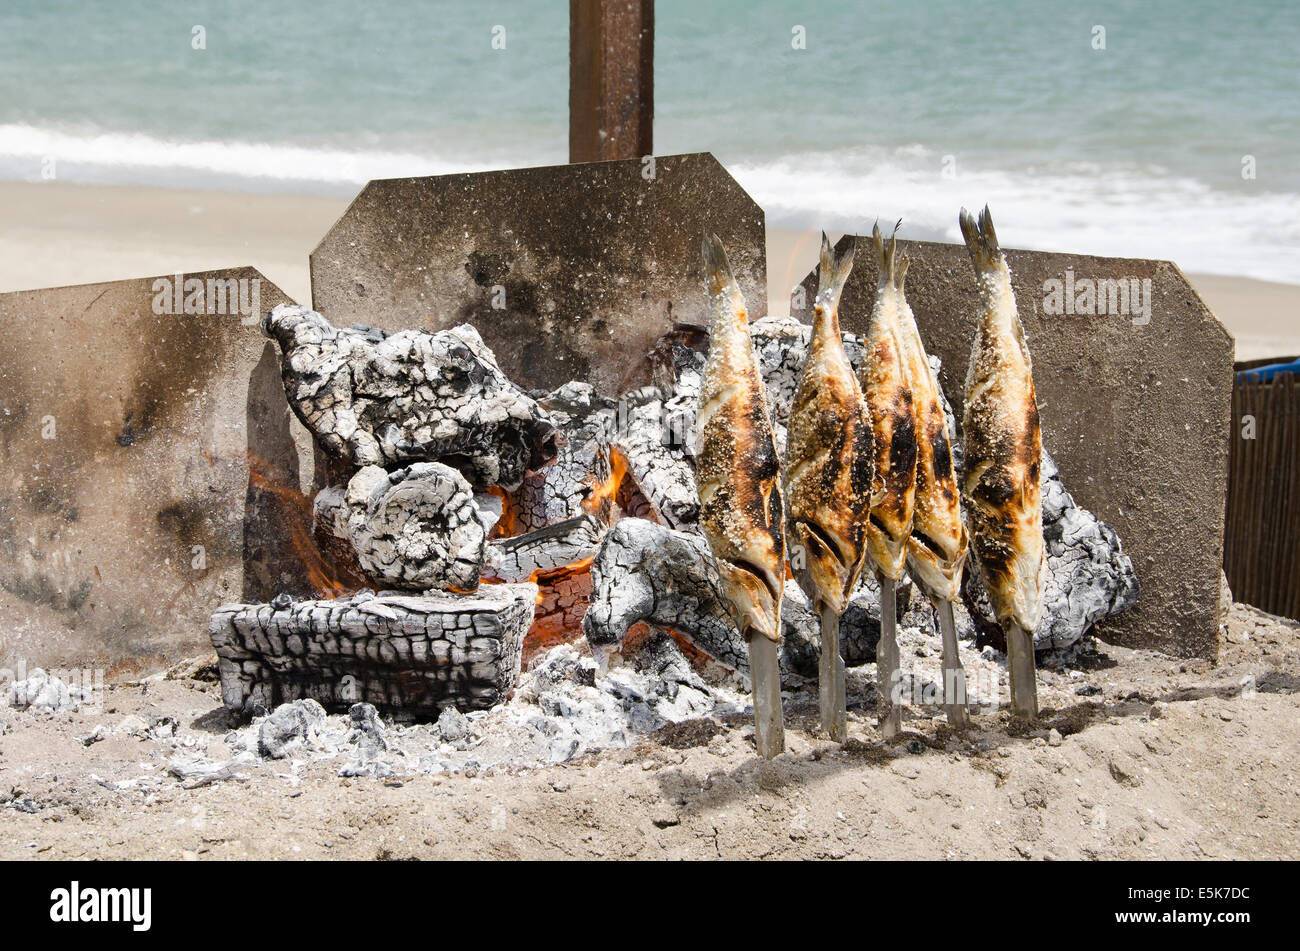 Bbq fish on beach immagini e fotografie stock ad alta risoluzione - Alamy